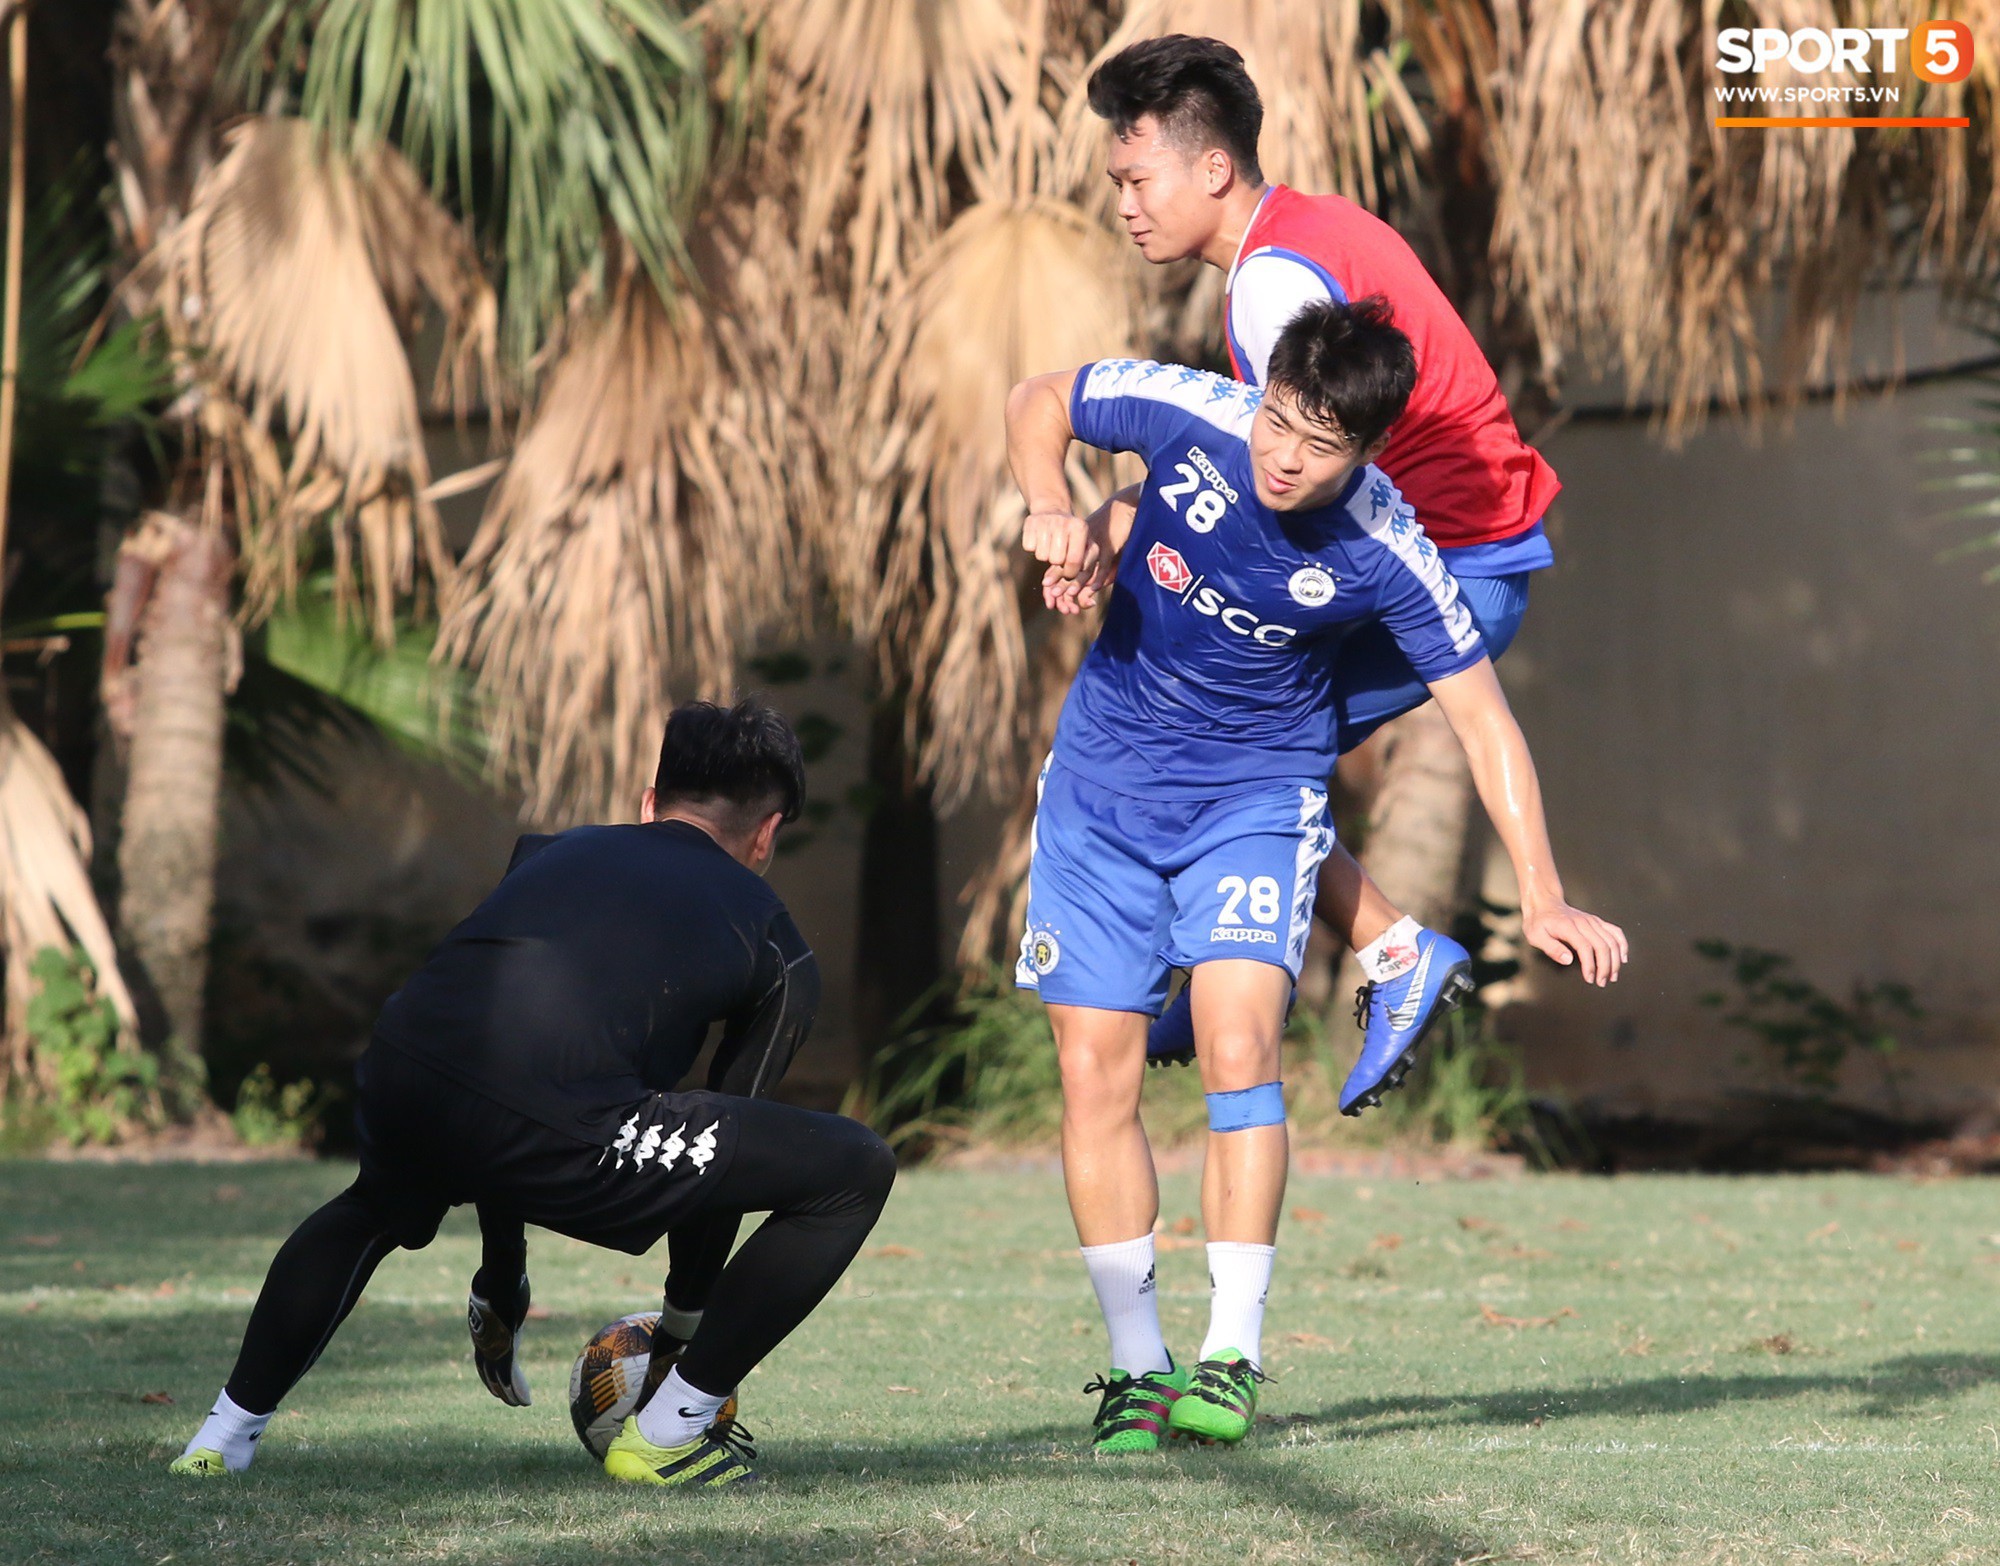 Cởi bỏ vẻ nghiêm nghị thường thấy, HLV của Hà Nội FC xỏ giày vào sân chơi lầy cùng Quang Hải, Duy Mạnh - Ảnh 4.